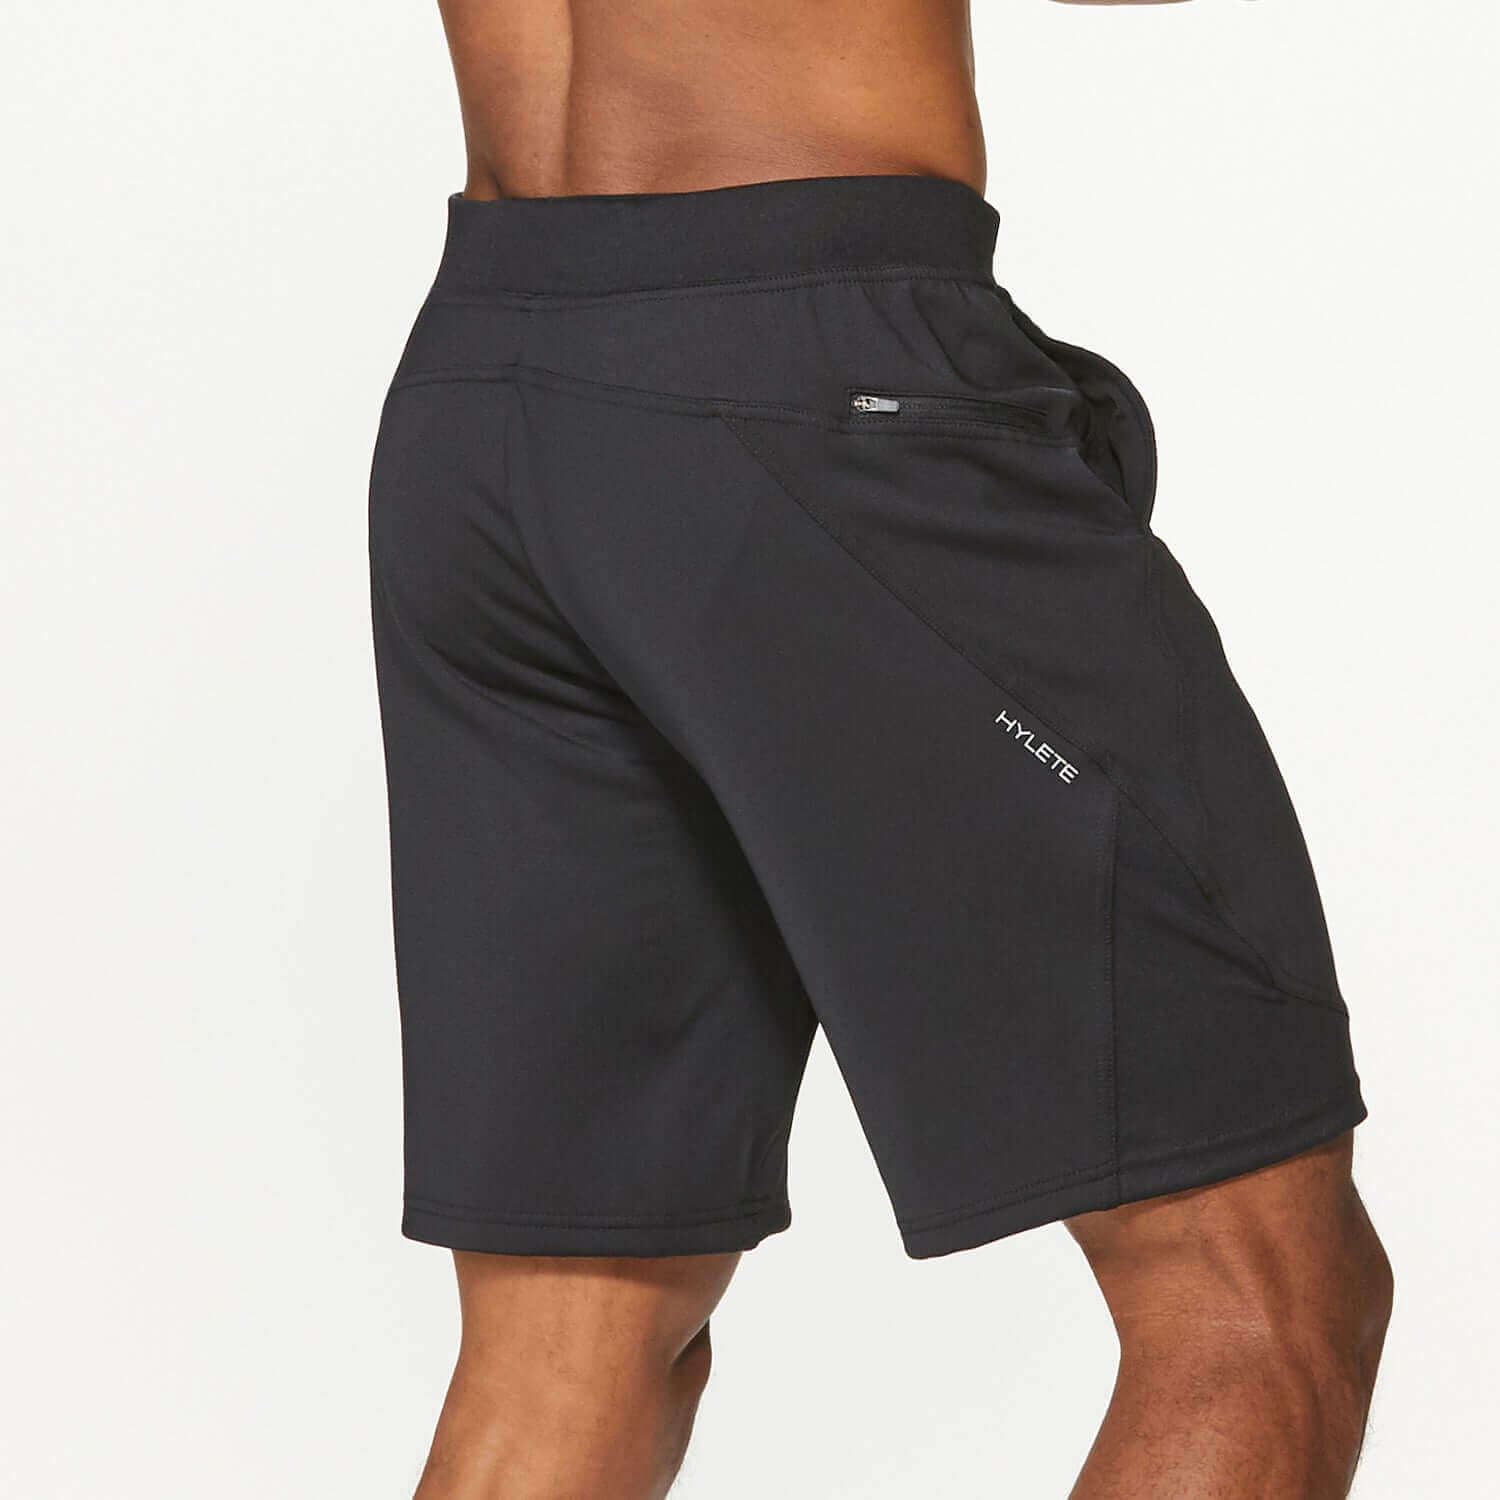 Black Athletic Short For Men | Gym Short With Pockets